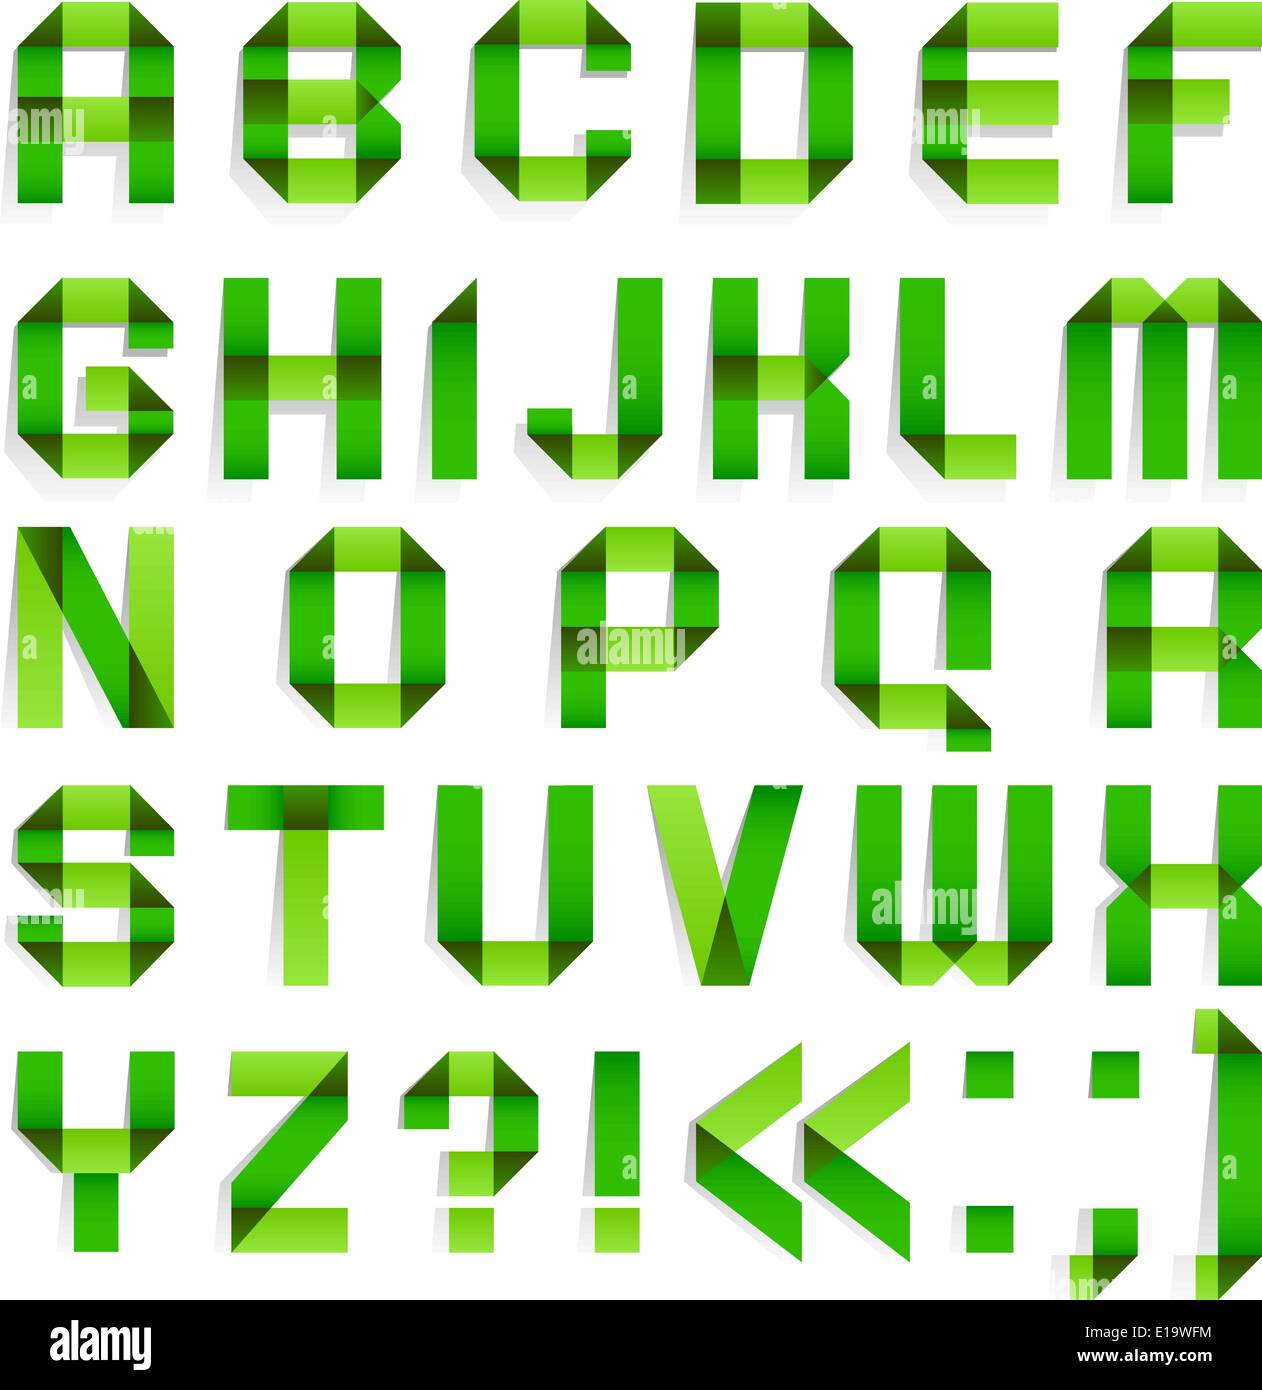 Alfabeto di carta piegato - lettere di colore verde. Alfabeto Romano (A,B,C,D, E, F, G, H, I, J, K, L, M, N, O, P, Q, R, S, T, U, V, W, X, Y Illustrazione Vettoriale